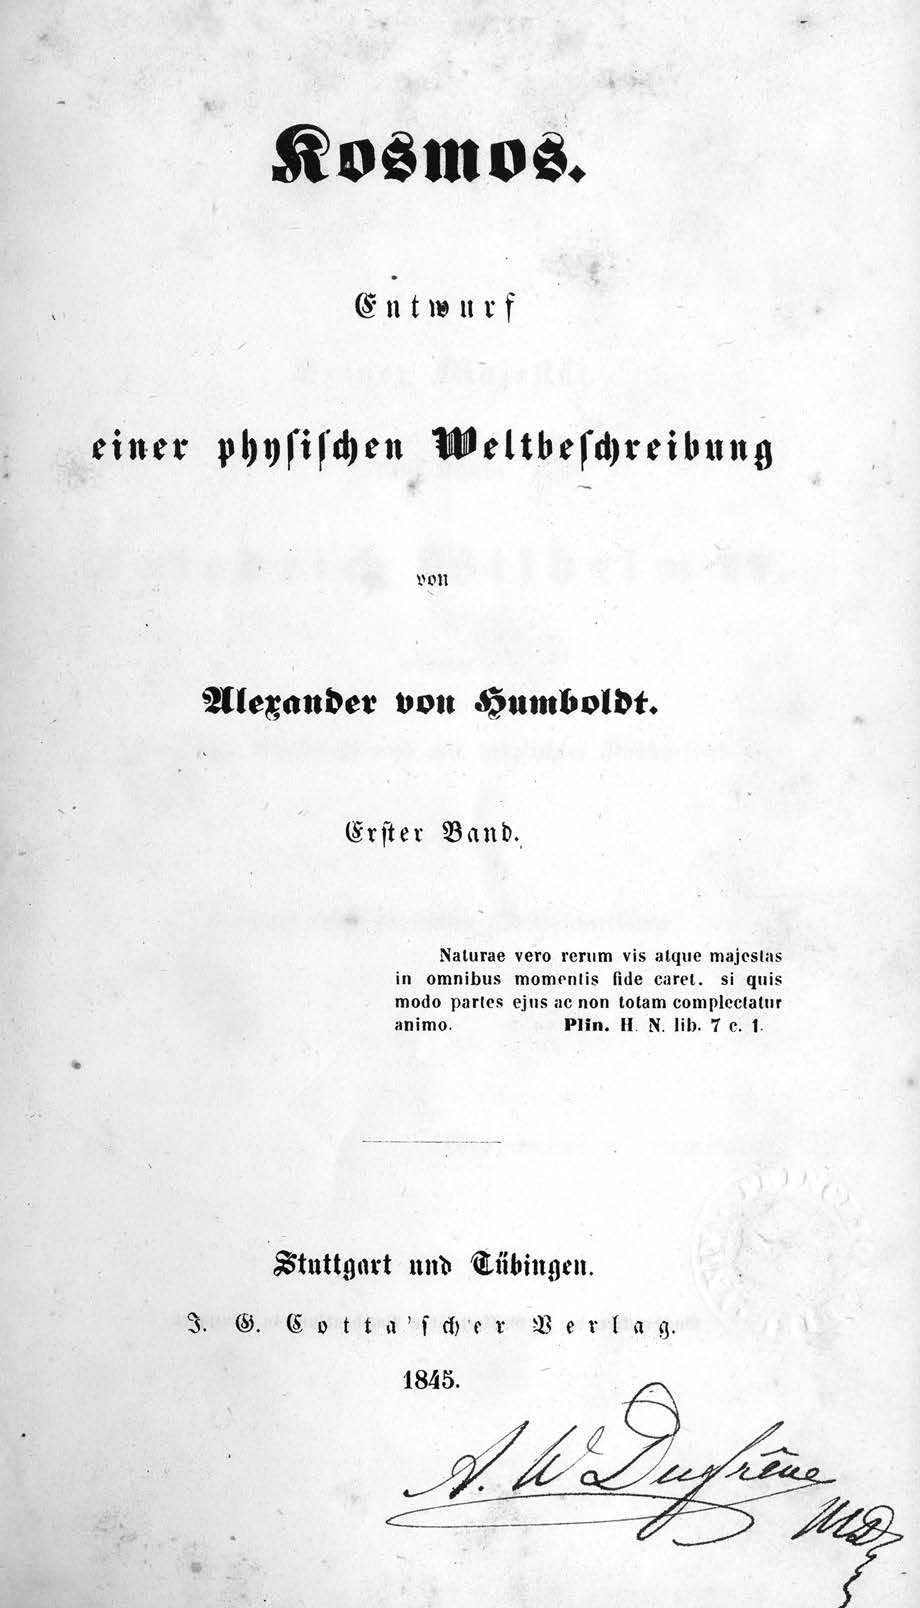 Title page of vol. 1 of Kosmos: Entwurf einer physischen Weltbeschreibung, by Alexander von Humboldt (Stuttgart and Tübingen: Cotta, 1845–62) .